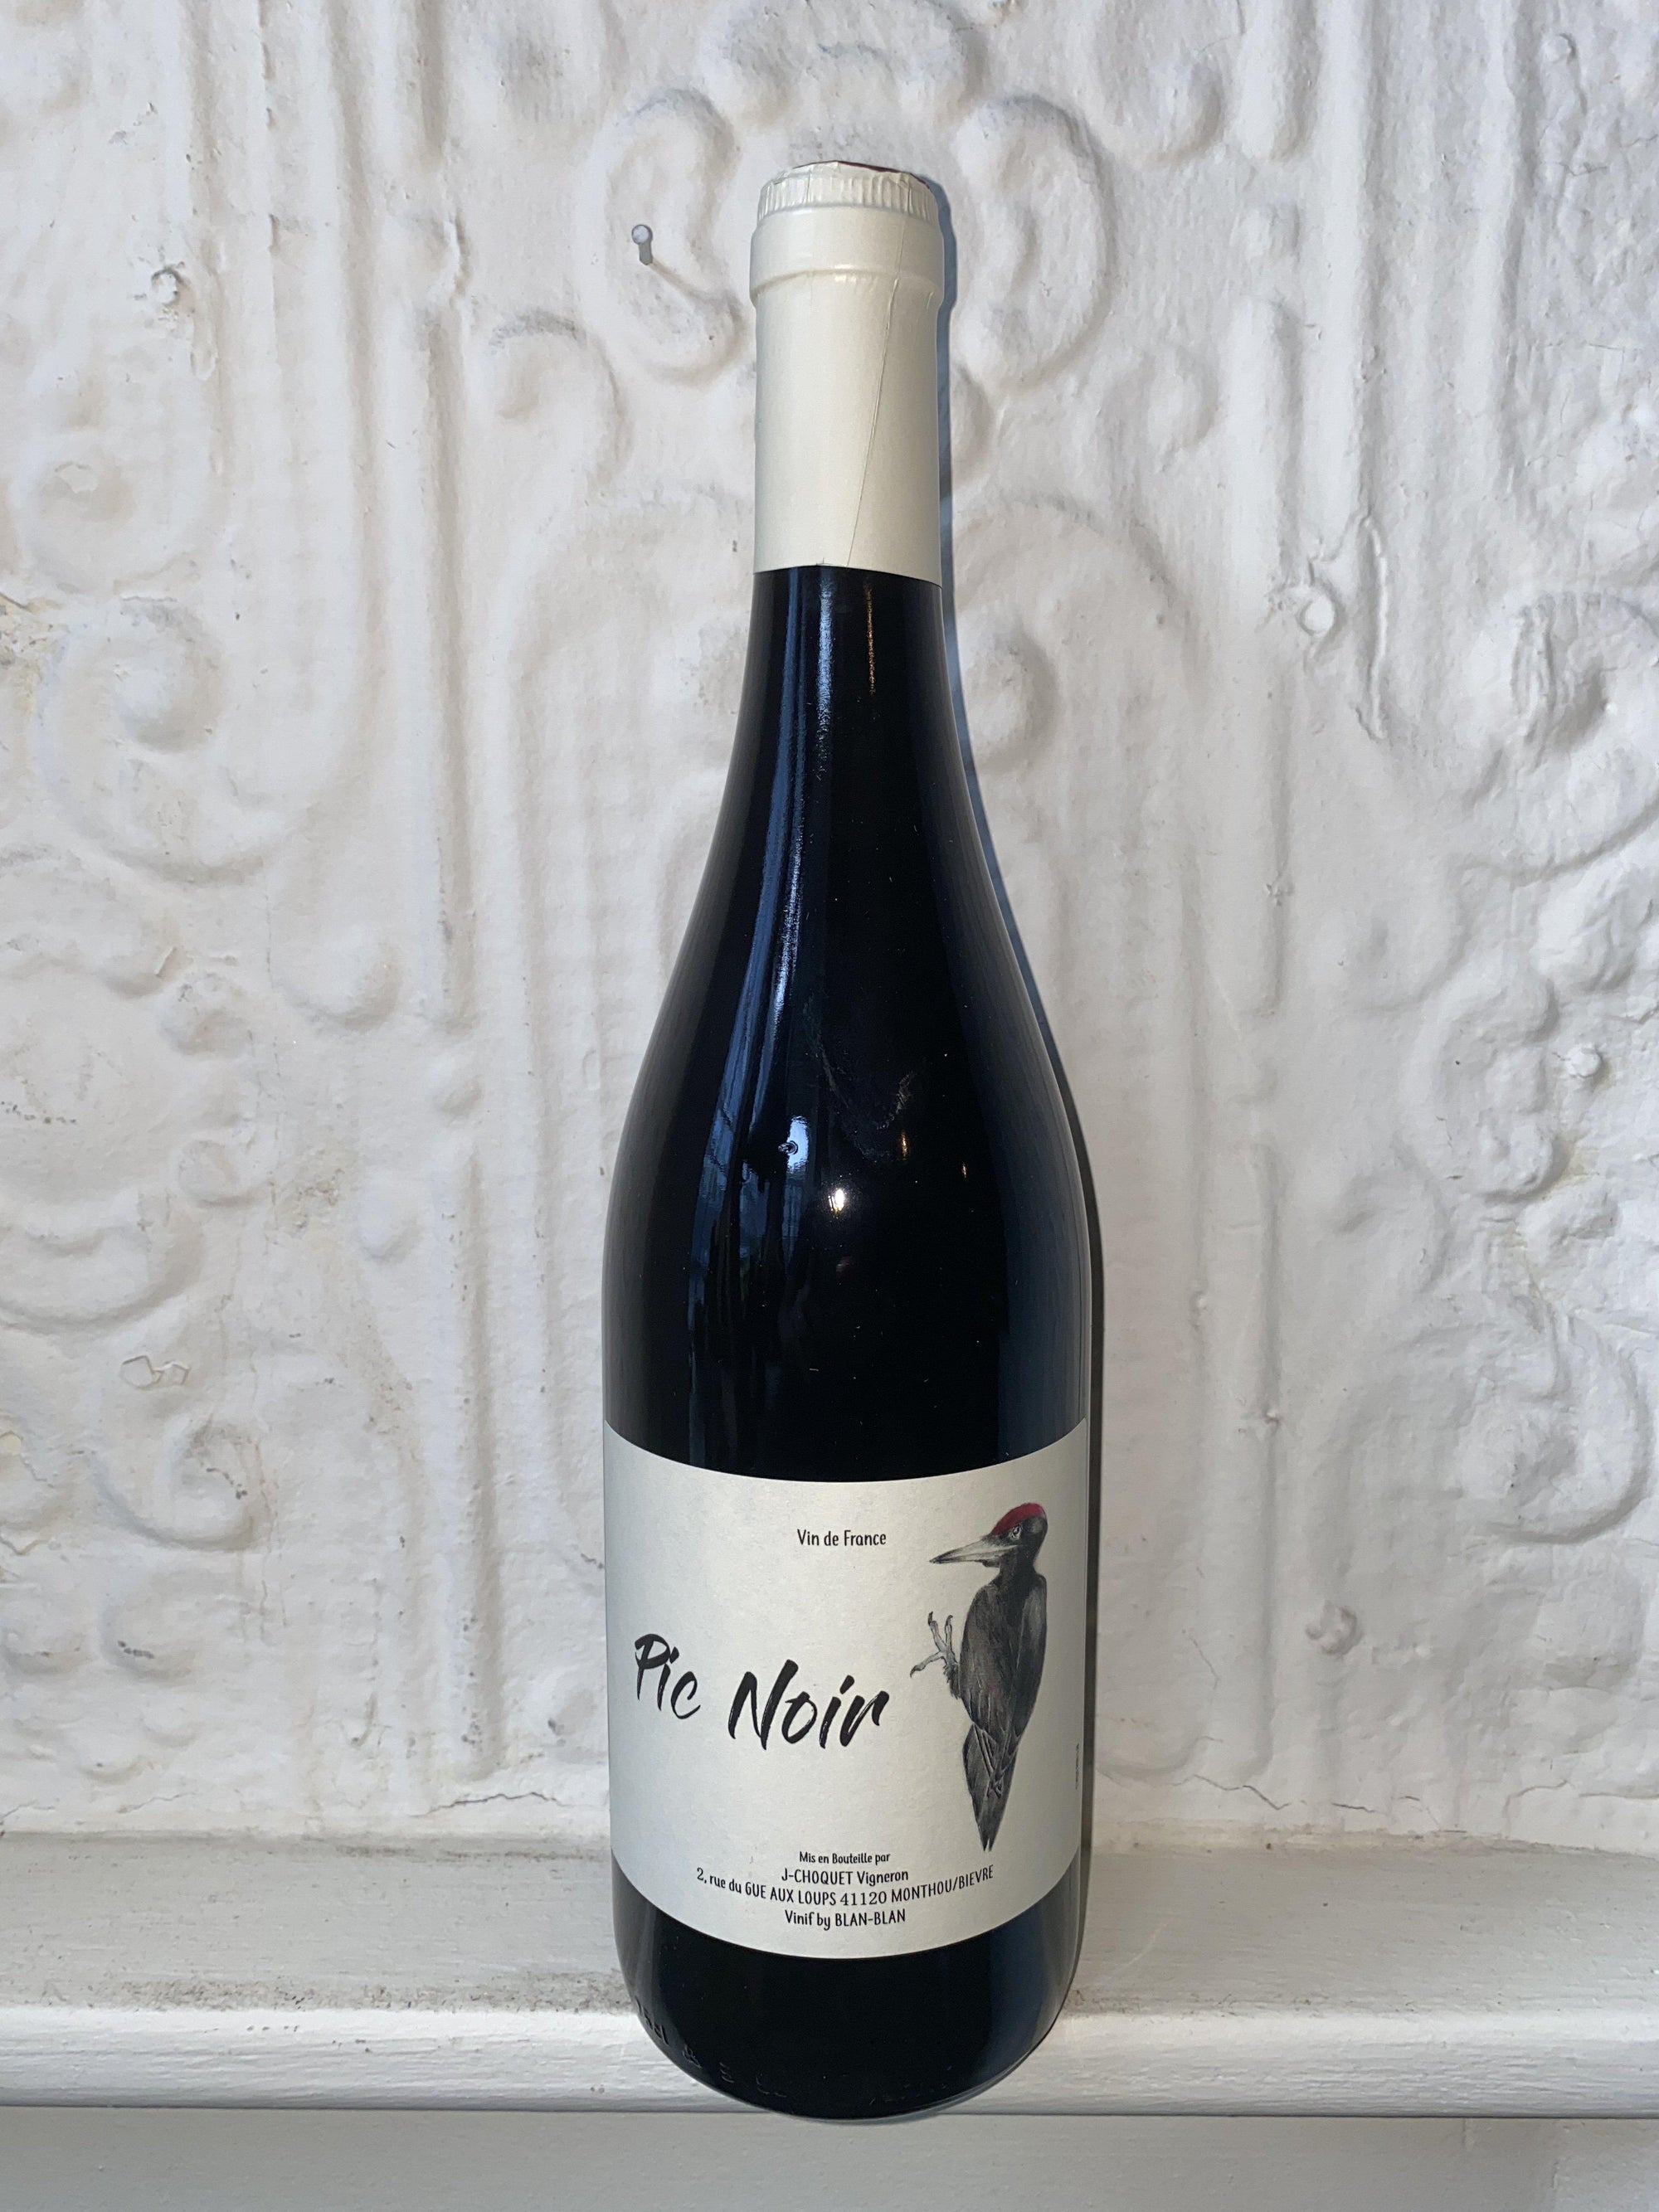 Pinot Noir "Pic Noir", Le Chat Huant 2019 (Loire, France)-Wine-Bibber & Bell